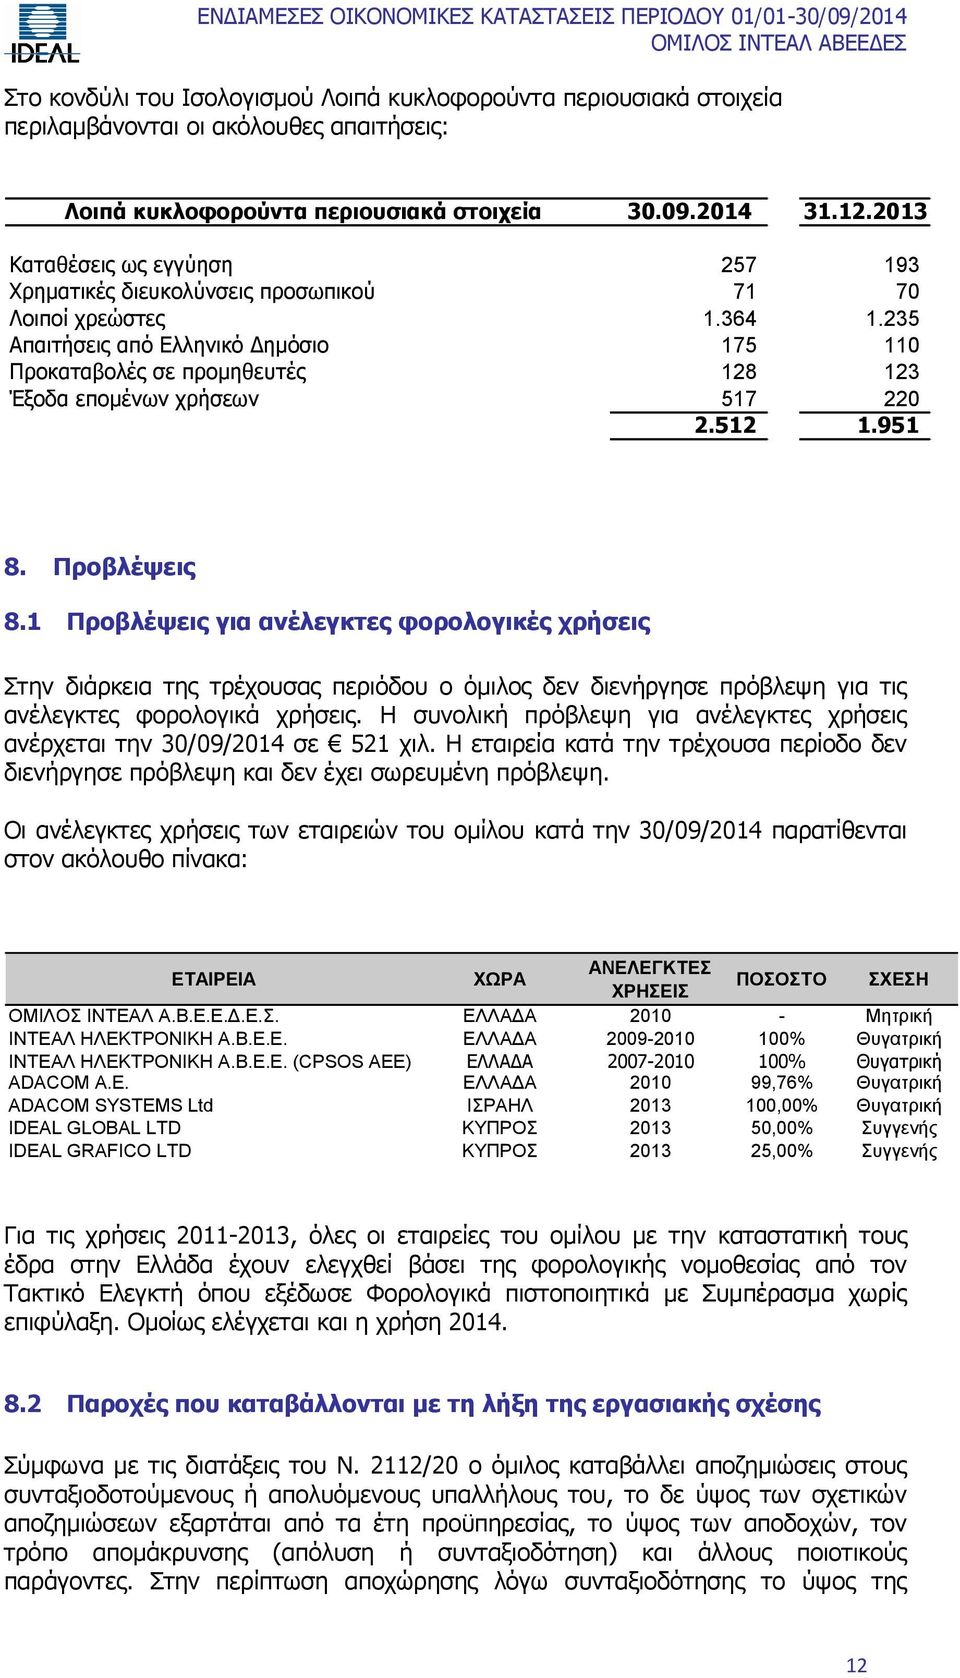 235 Απαιτήσεις από Ελληνικό Δημόσιο 175 110 Προκαταβολές σε προμηθευτές 128 123 Έξοδα επομένων χρήσεων 517 220 2.512 1.951 8. Προβλέψεις 8.